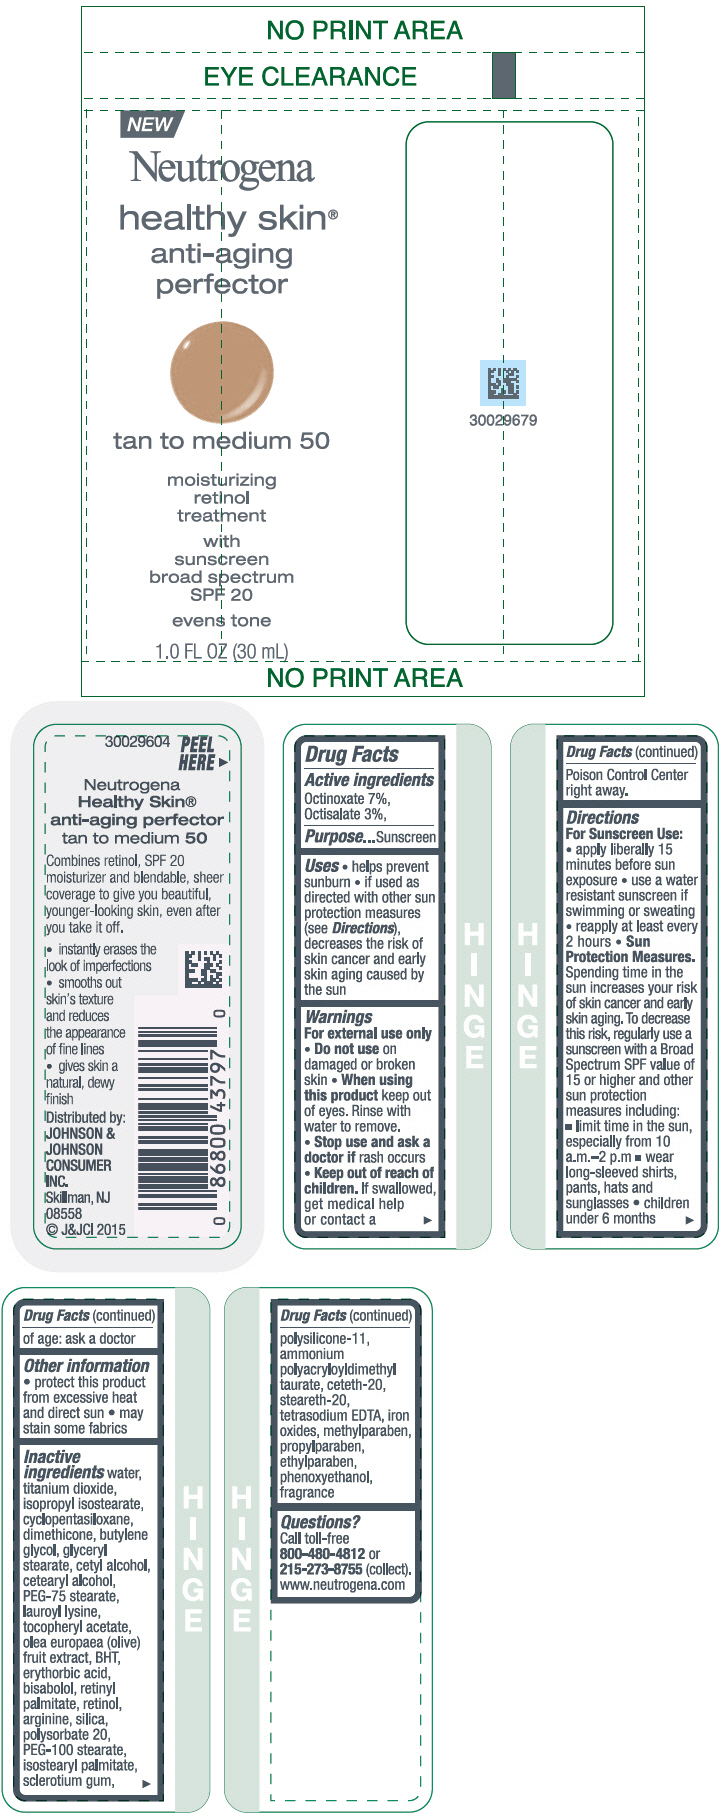 PRINCIPAL DISPLAY PANEL - 30 mL Bottle Label - tan to medium 50